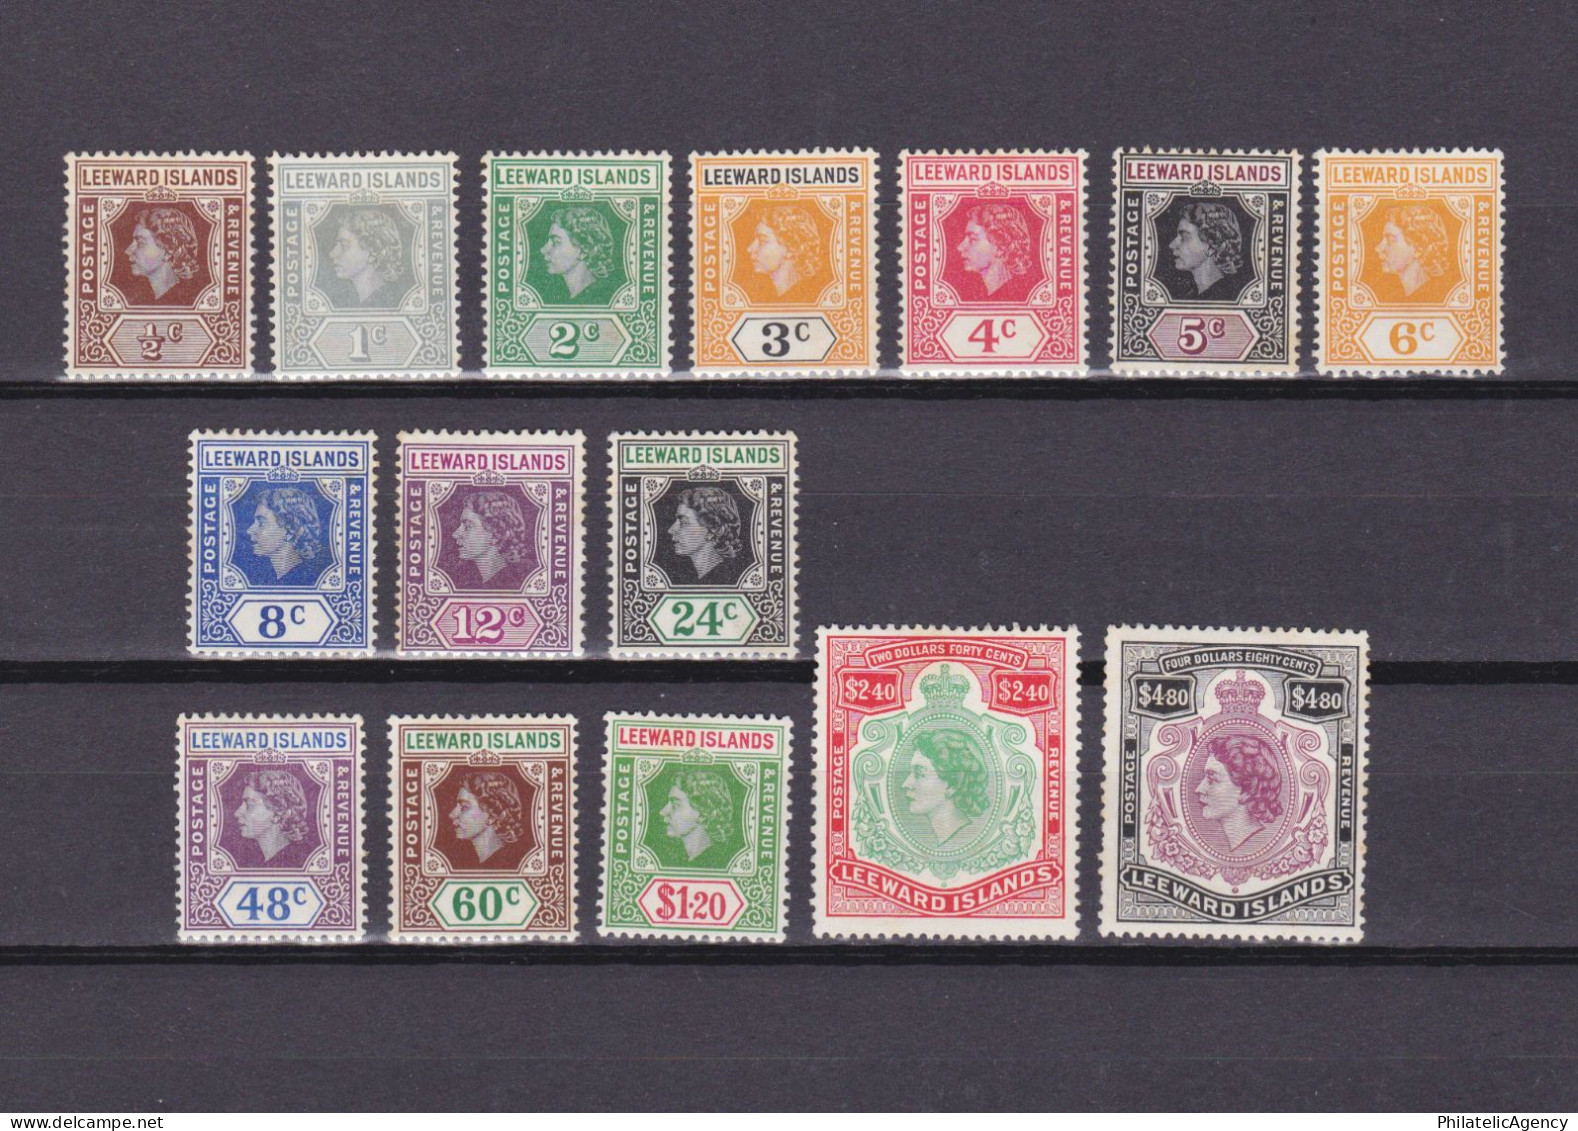 LEEWARD ISLANDS 1954, SG #126-140, CV £60, MH - Leeward  Islands